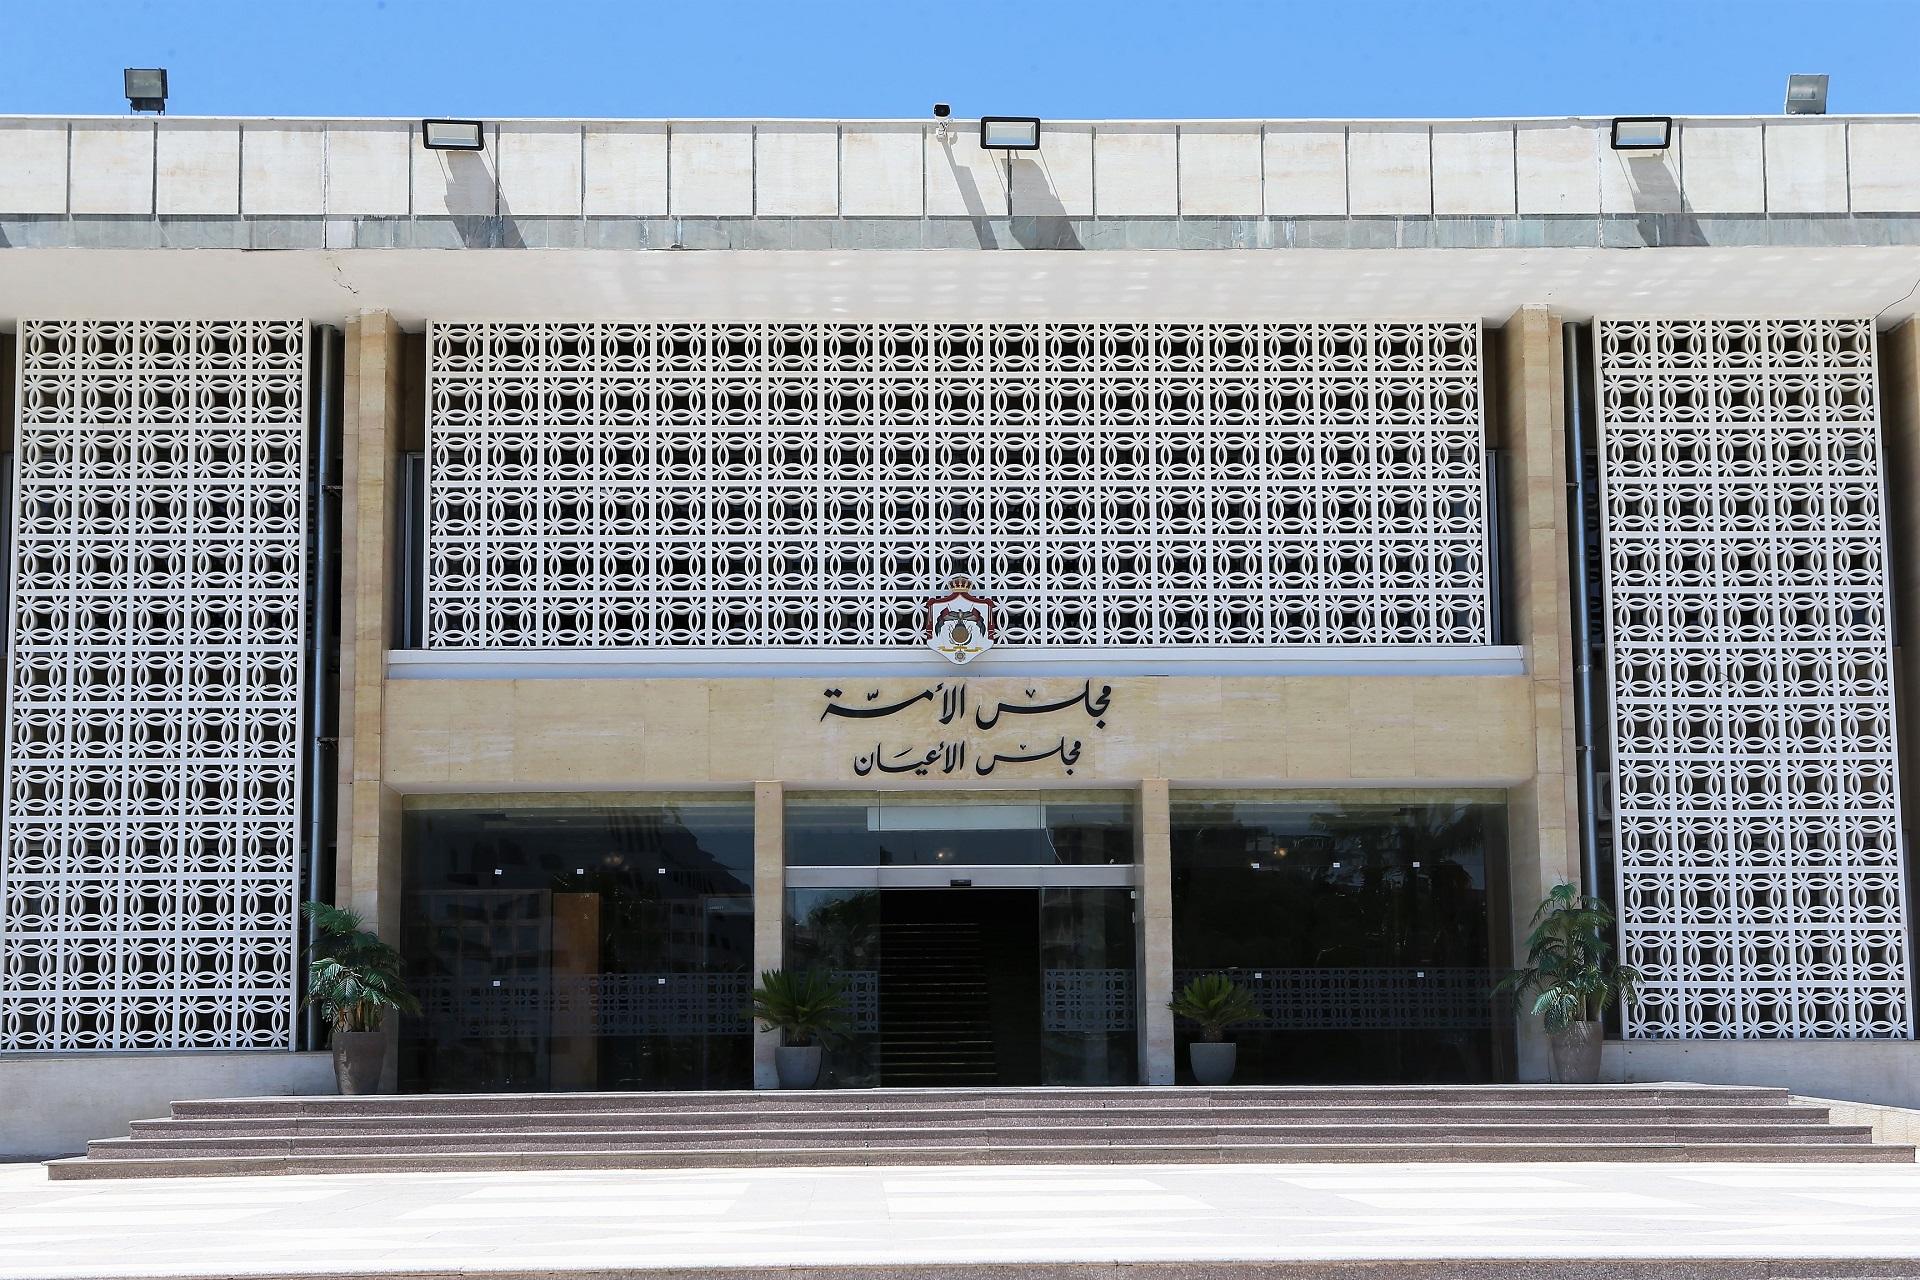 مدخل مجلس الأعيان في العبدلي. صلاح ملكاوي / المملكة